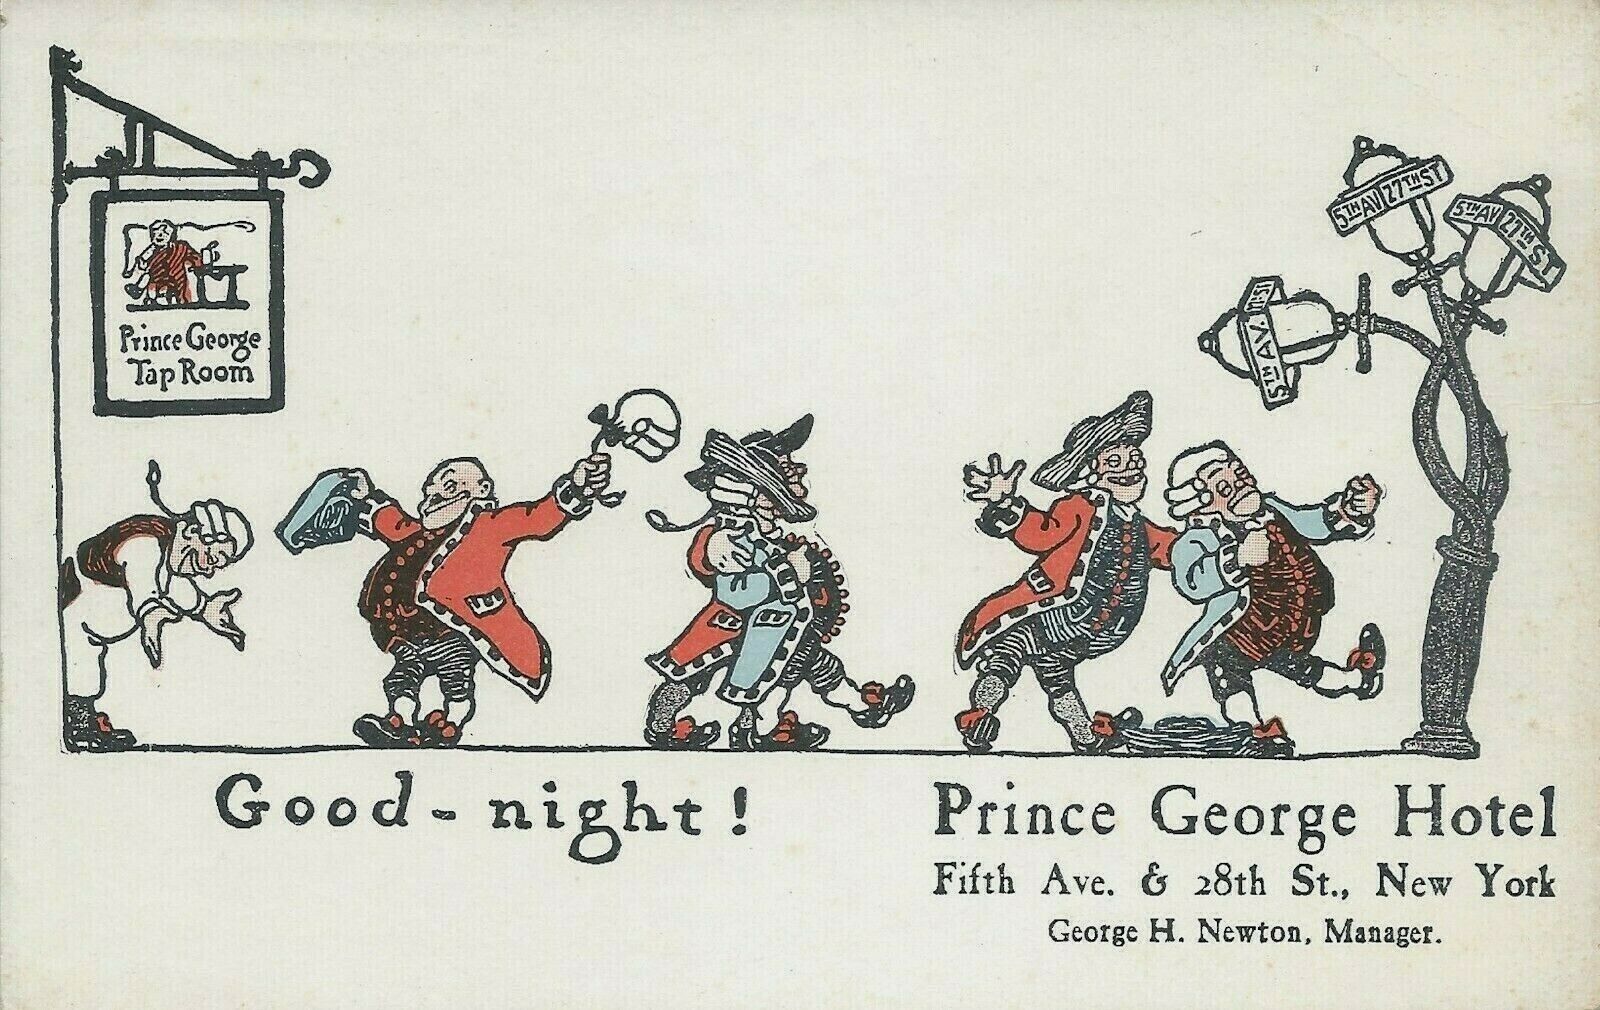 Prince George Hotel, 5th Ave. & 28th St., Manhattan, N.Y.C., Early Postcard